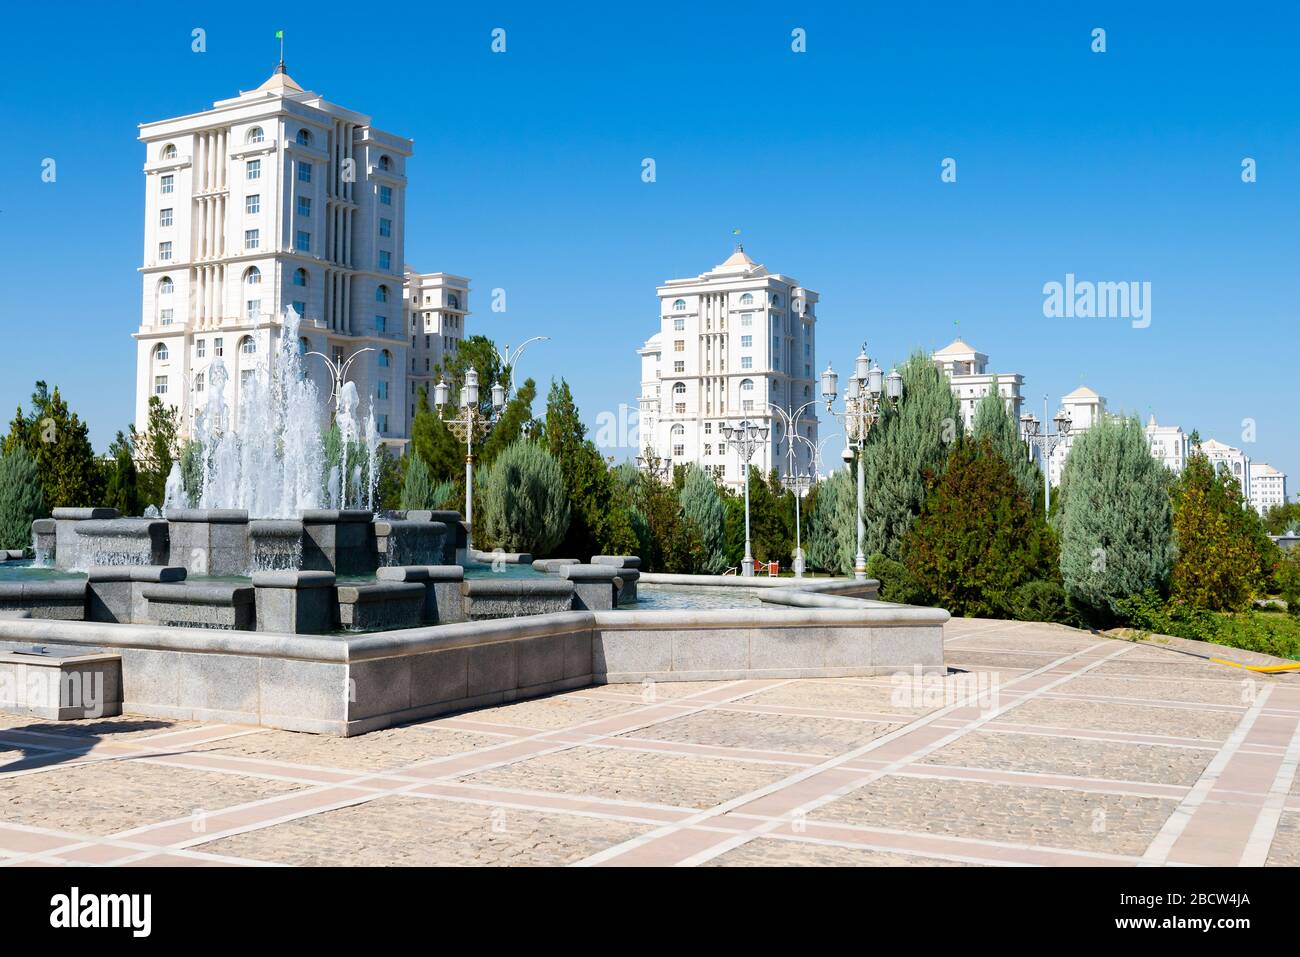 Piazza ad Ashgabat, Turkmenistan, che mostra fontana d'acqua e numerosi edifici residenziali in marmo bianco di recente costruzione dietro. Foto Stock